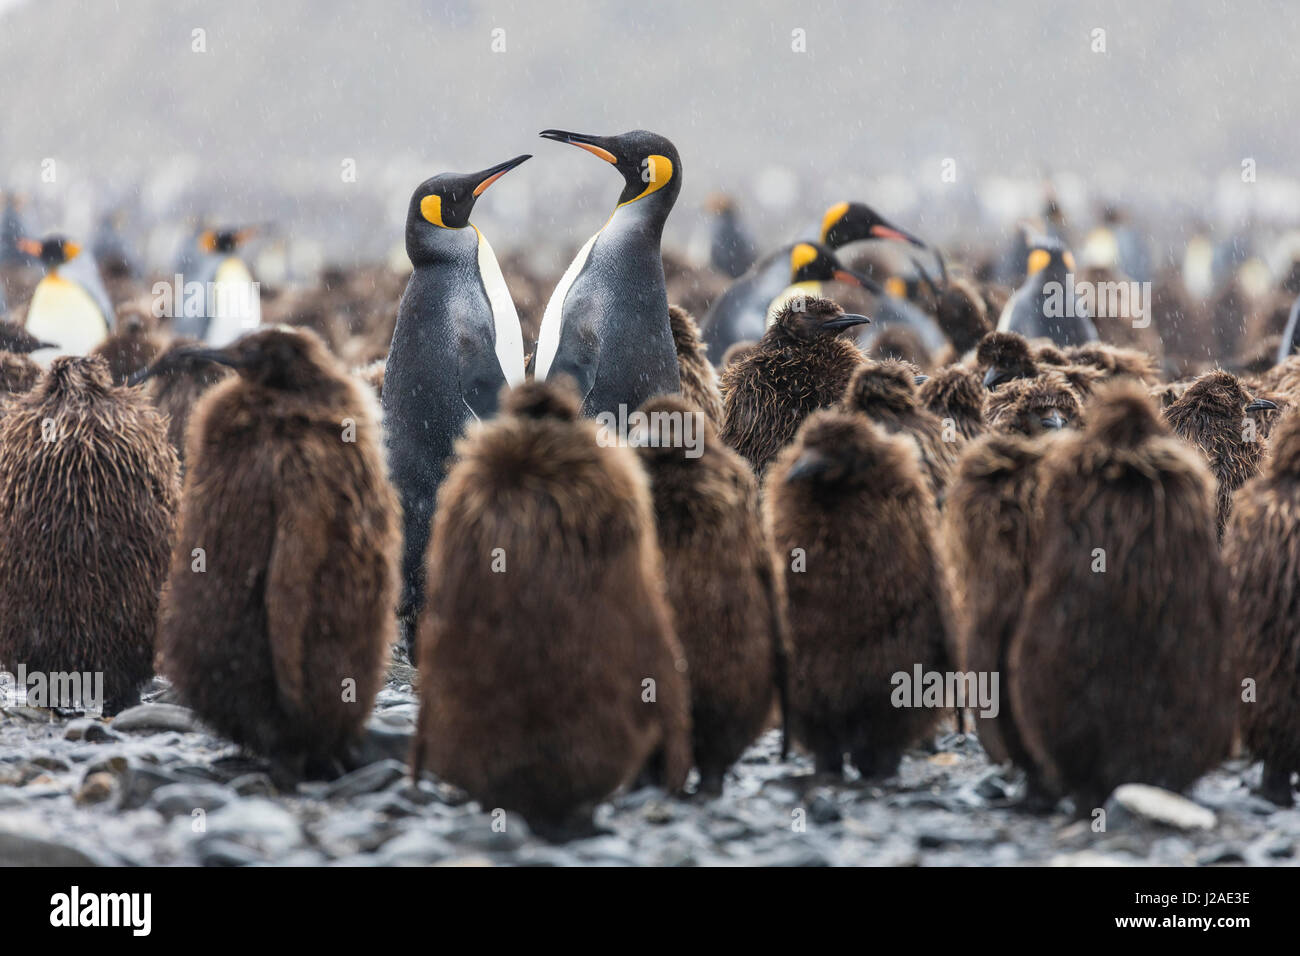 South Georgia Island, Salisbury Plains. Erwachsenen König Pinguine inmitten Jungtiere während Gewitter. Kredit als Josh Anon / Jaynes Galerie / DanitaDelimont.com (großformatige Größen erhältlich) Stockfoto